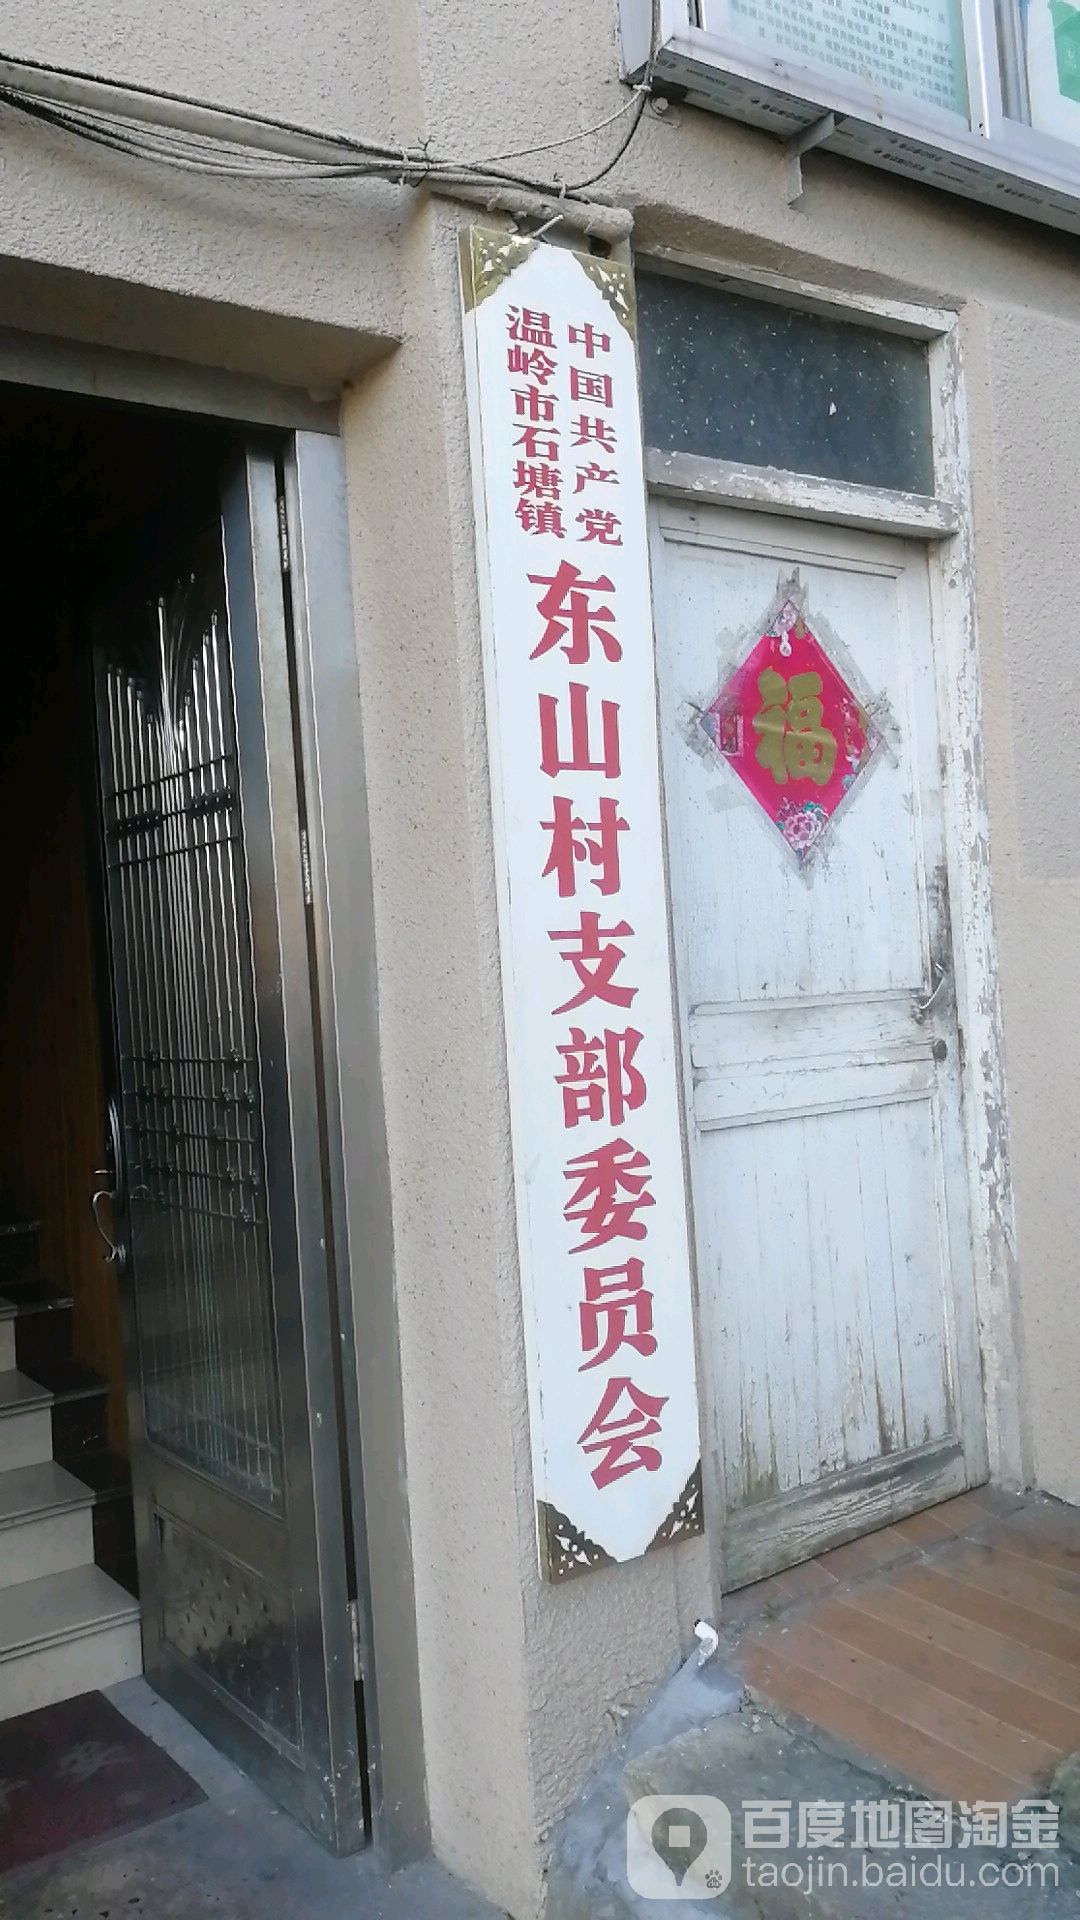 中国共产党温岭市石塘镇东山村支部委员会                     地址